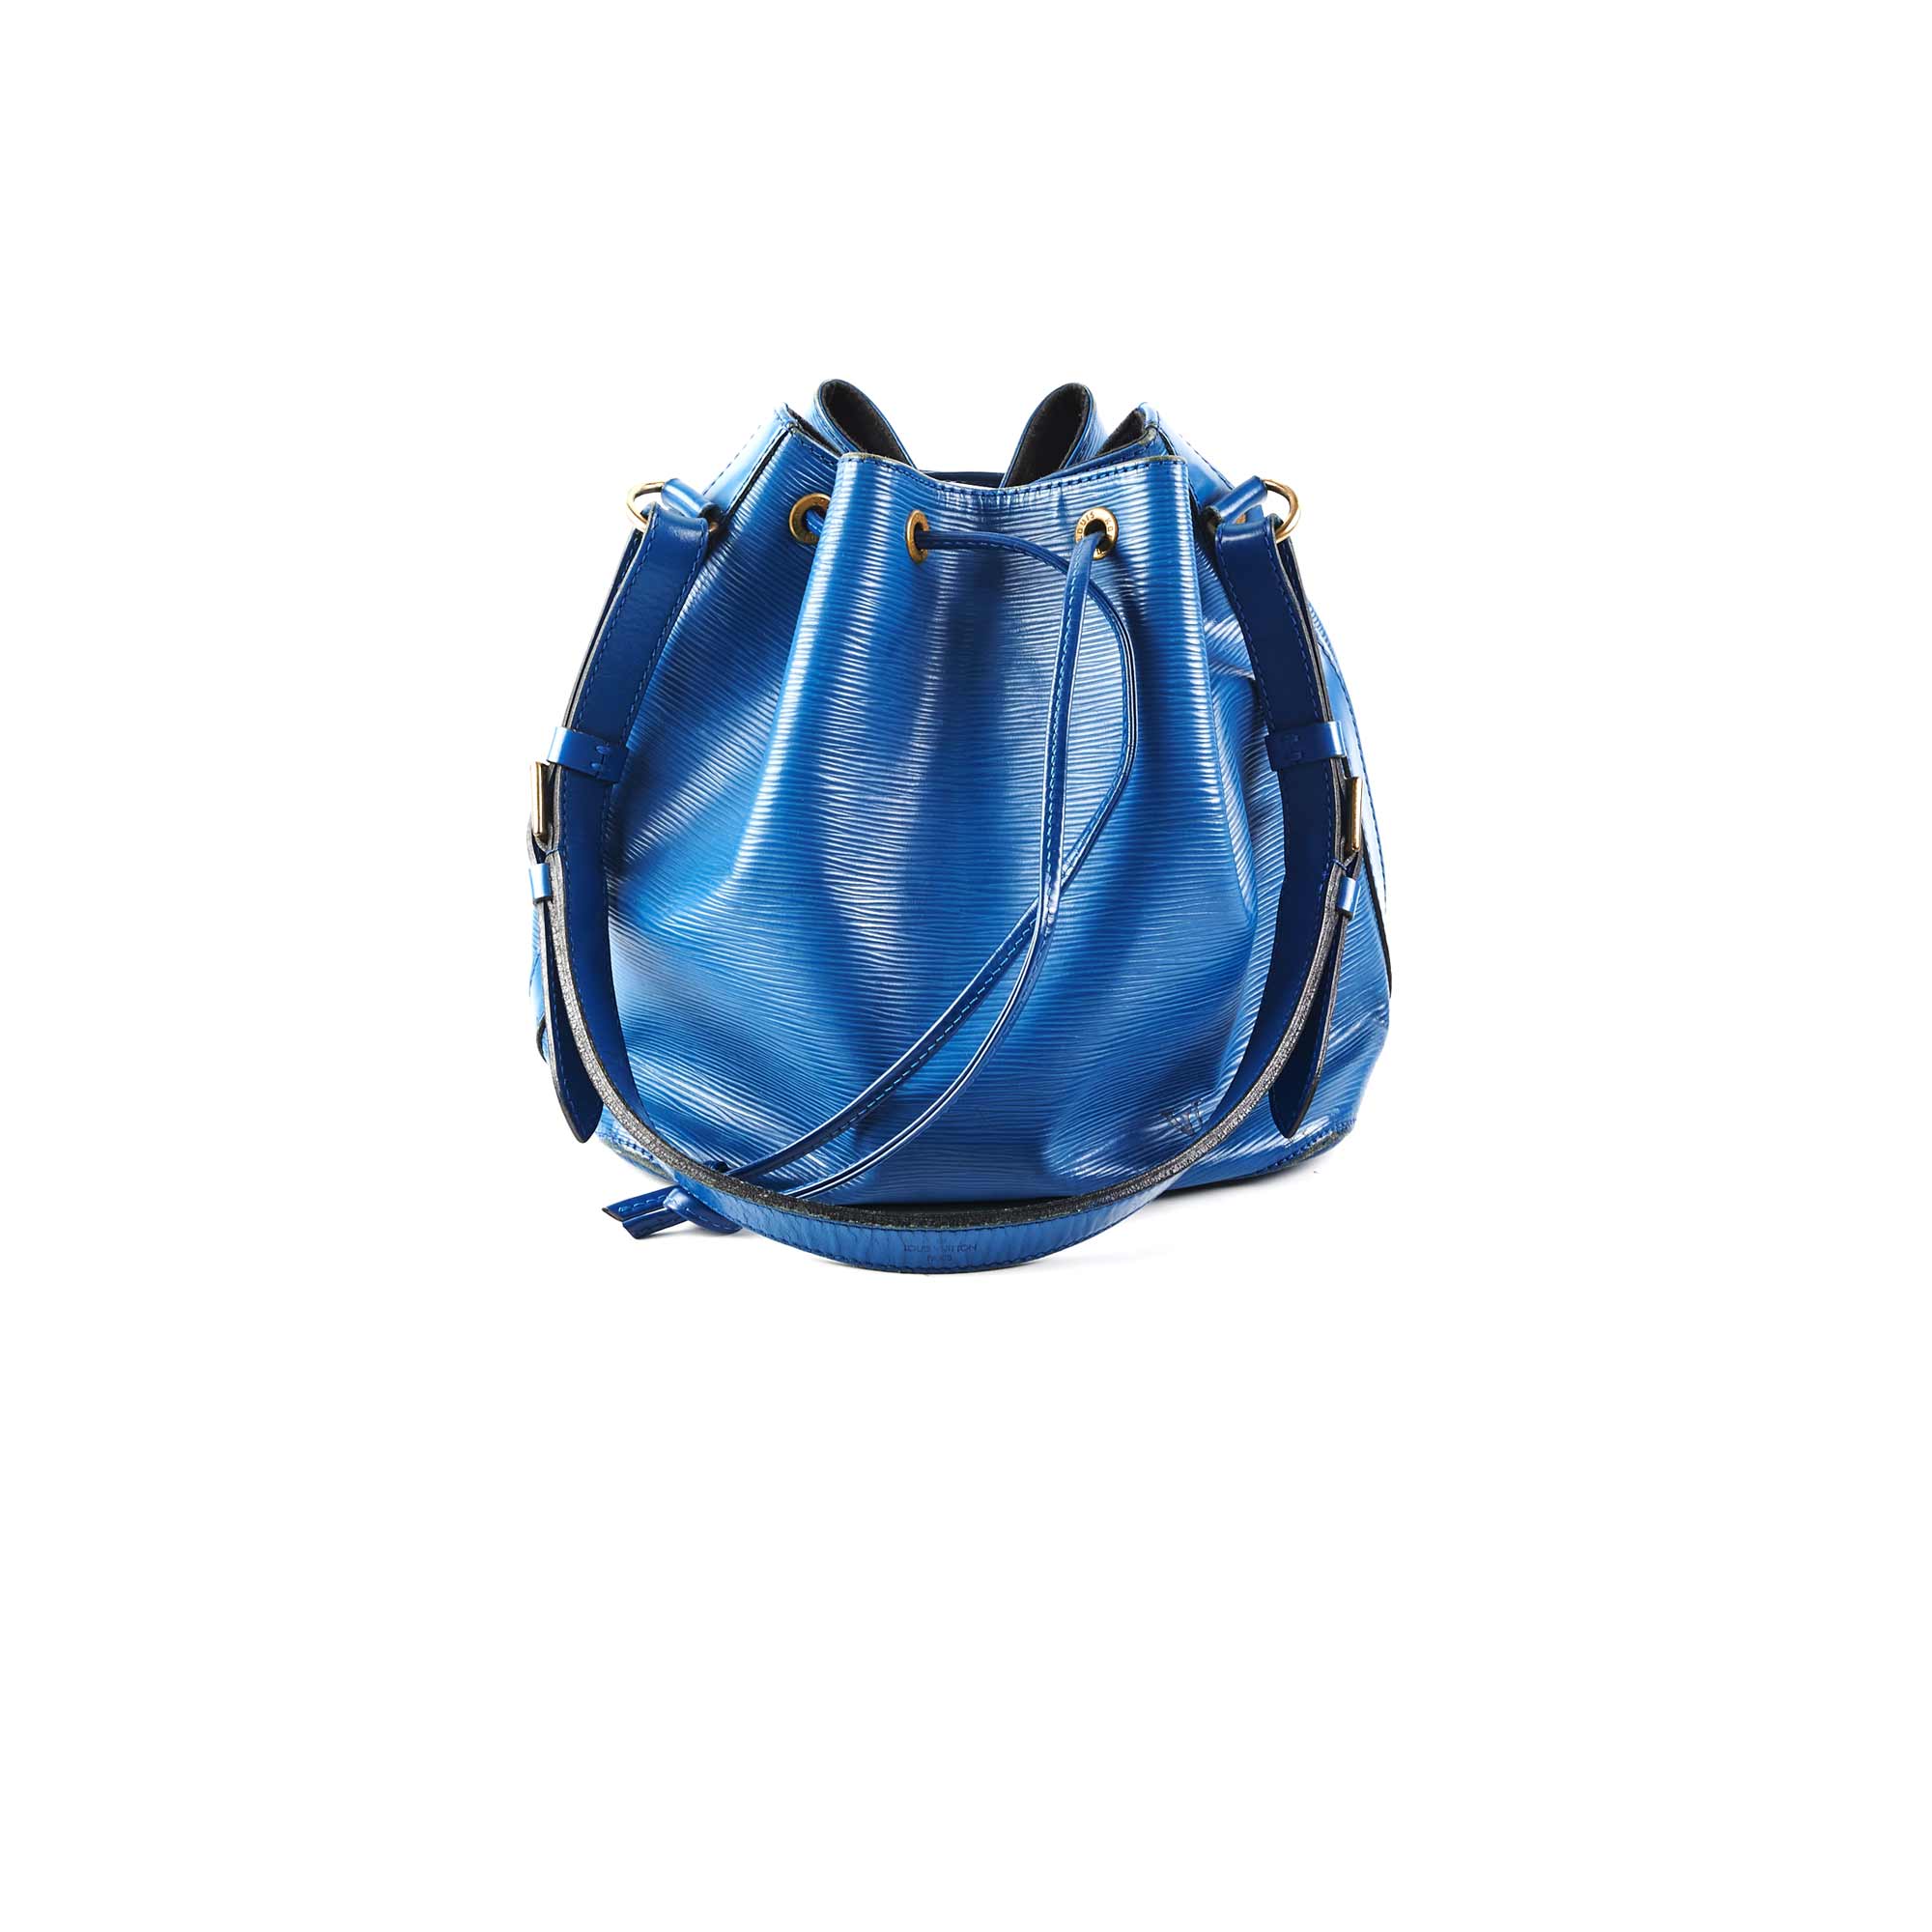 BAG NOE in blue epi leather, inside in black alcantara…